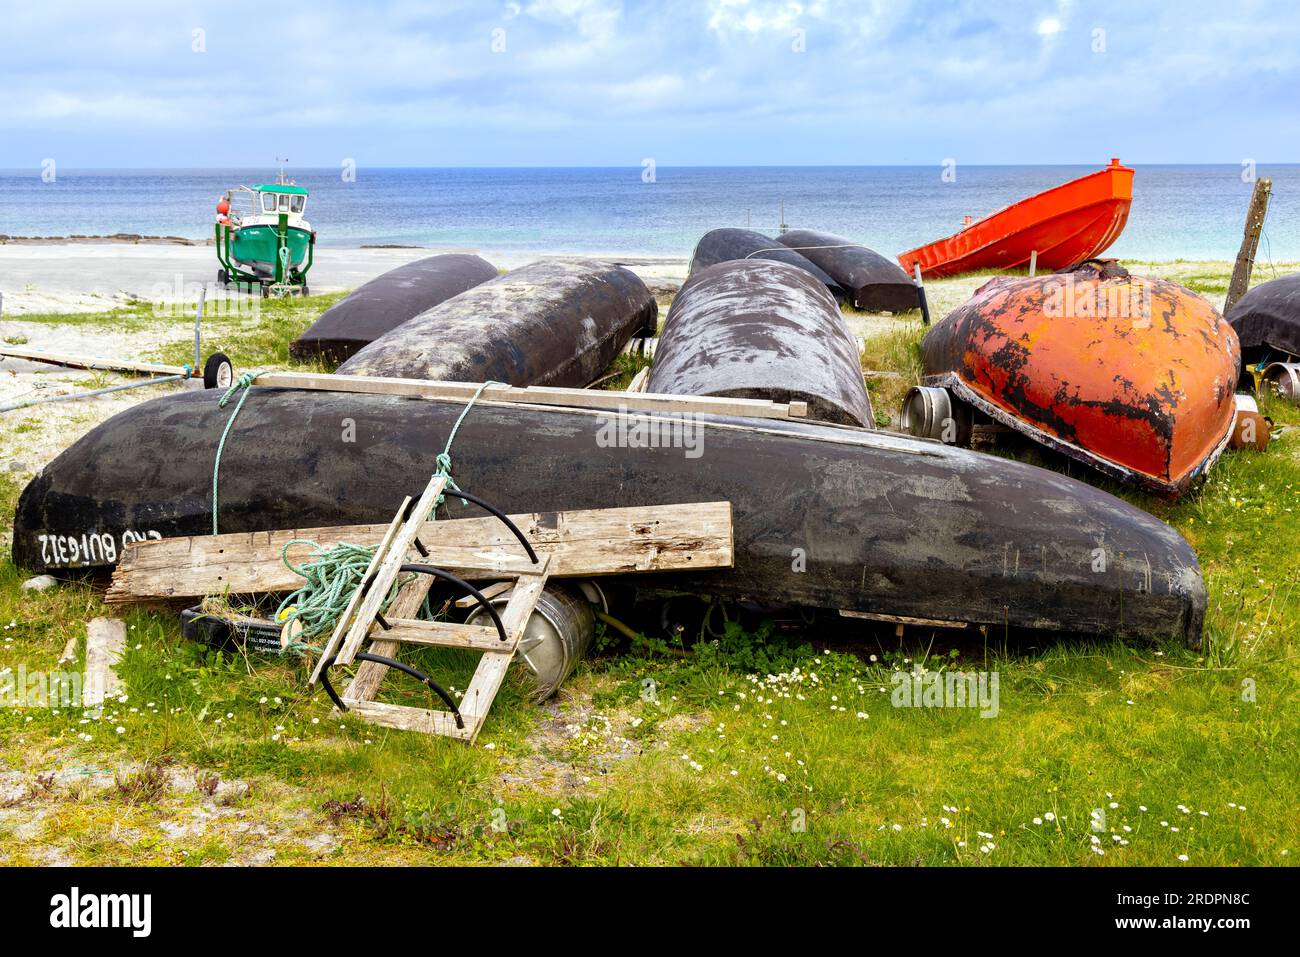 Currachs, barcos pesqueros tradicionales irlandeses, tumbados en la playa Inisheer, la más pequeña de las islas Aran, bahía de Galway, República de Irlanda. Foto de stock